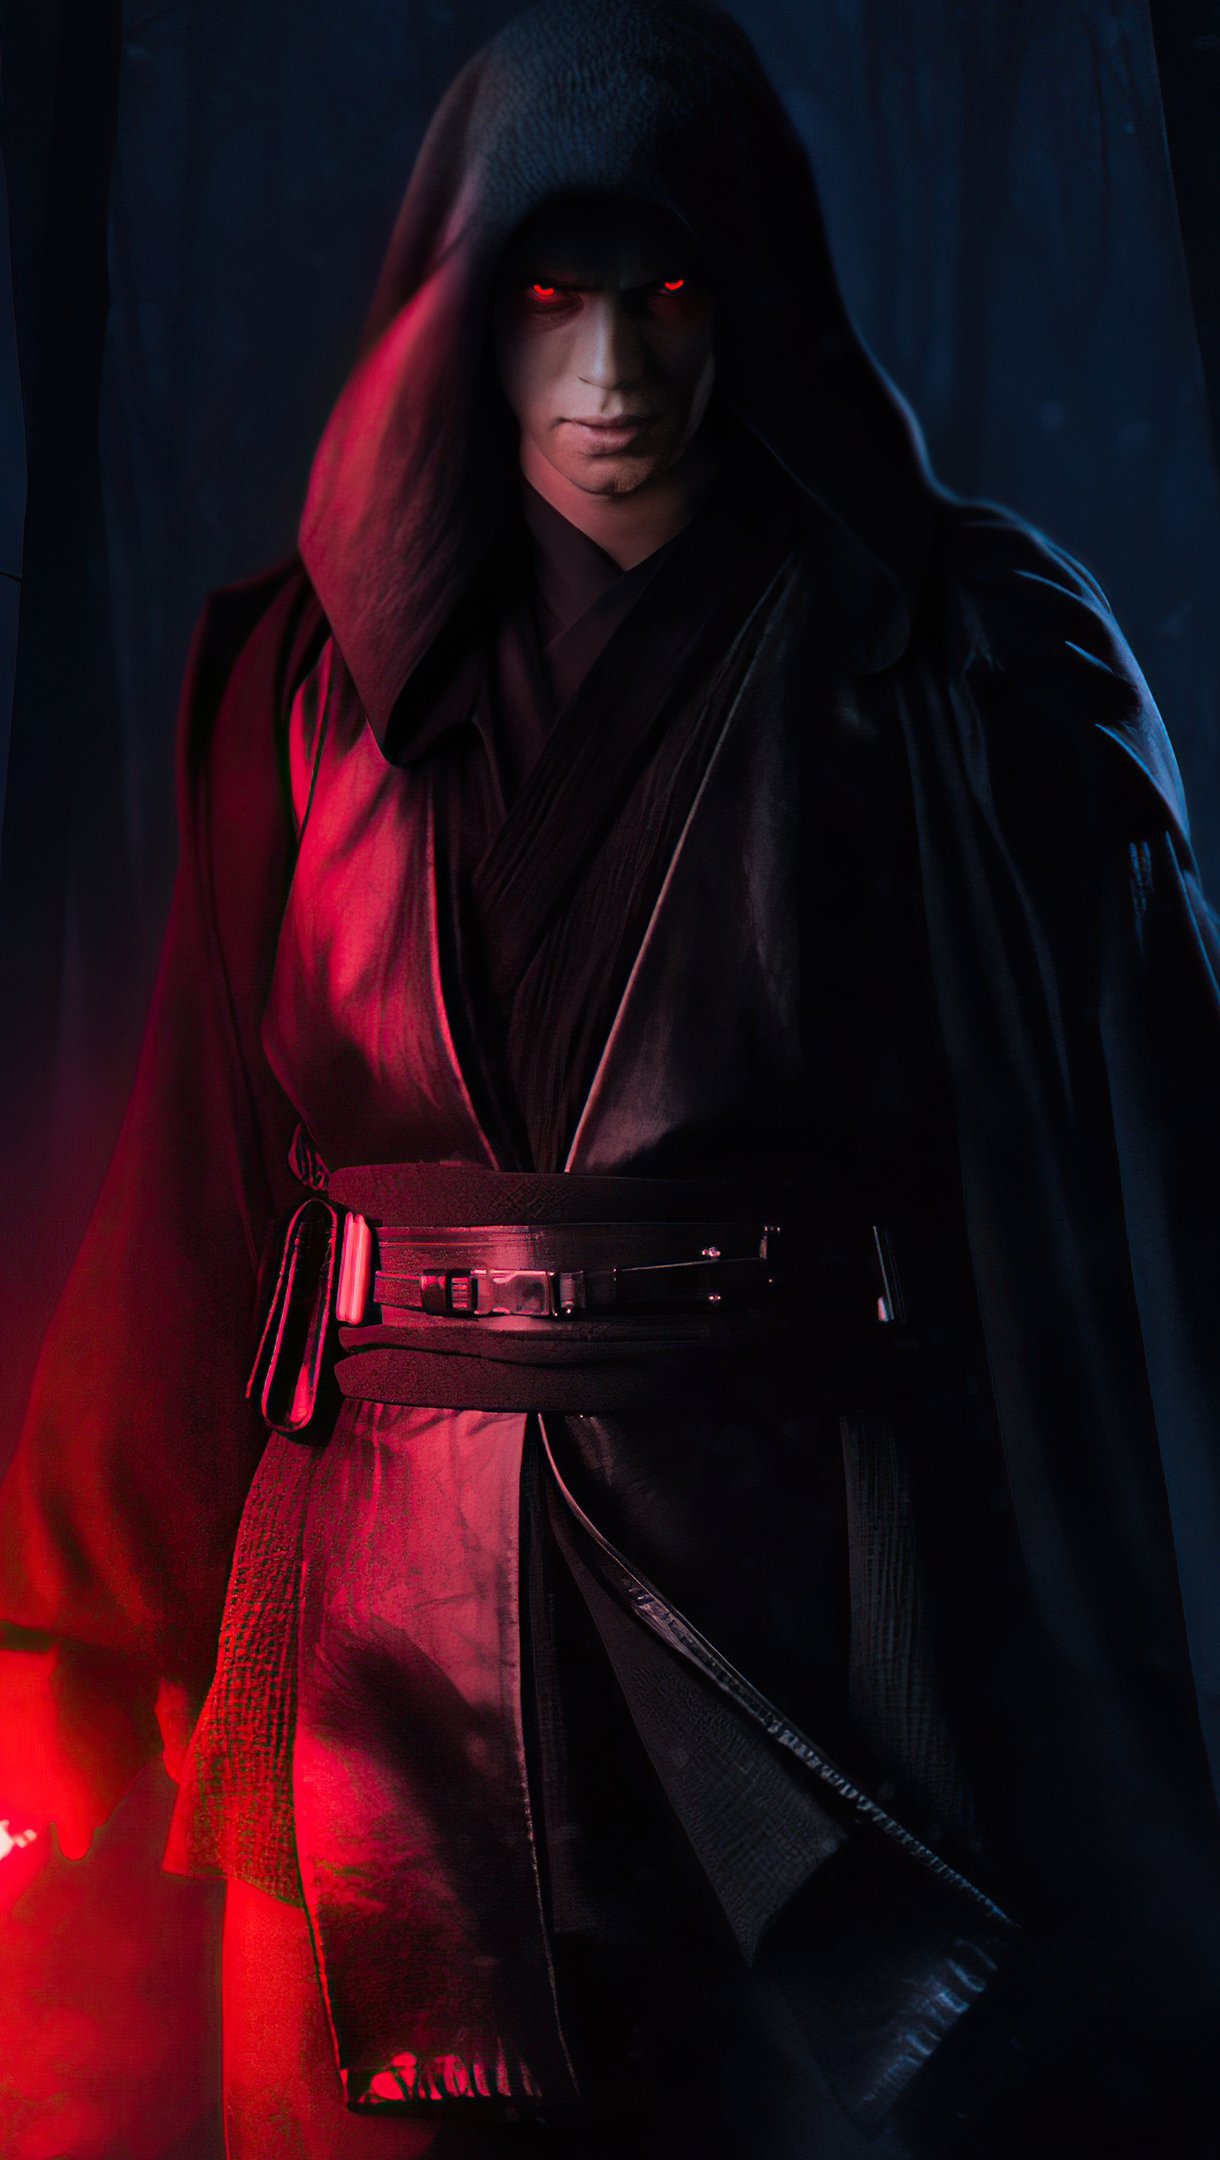 Fondos de pantalla Hayden Christensen como Anakin Skywalker Vertical